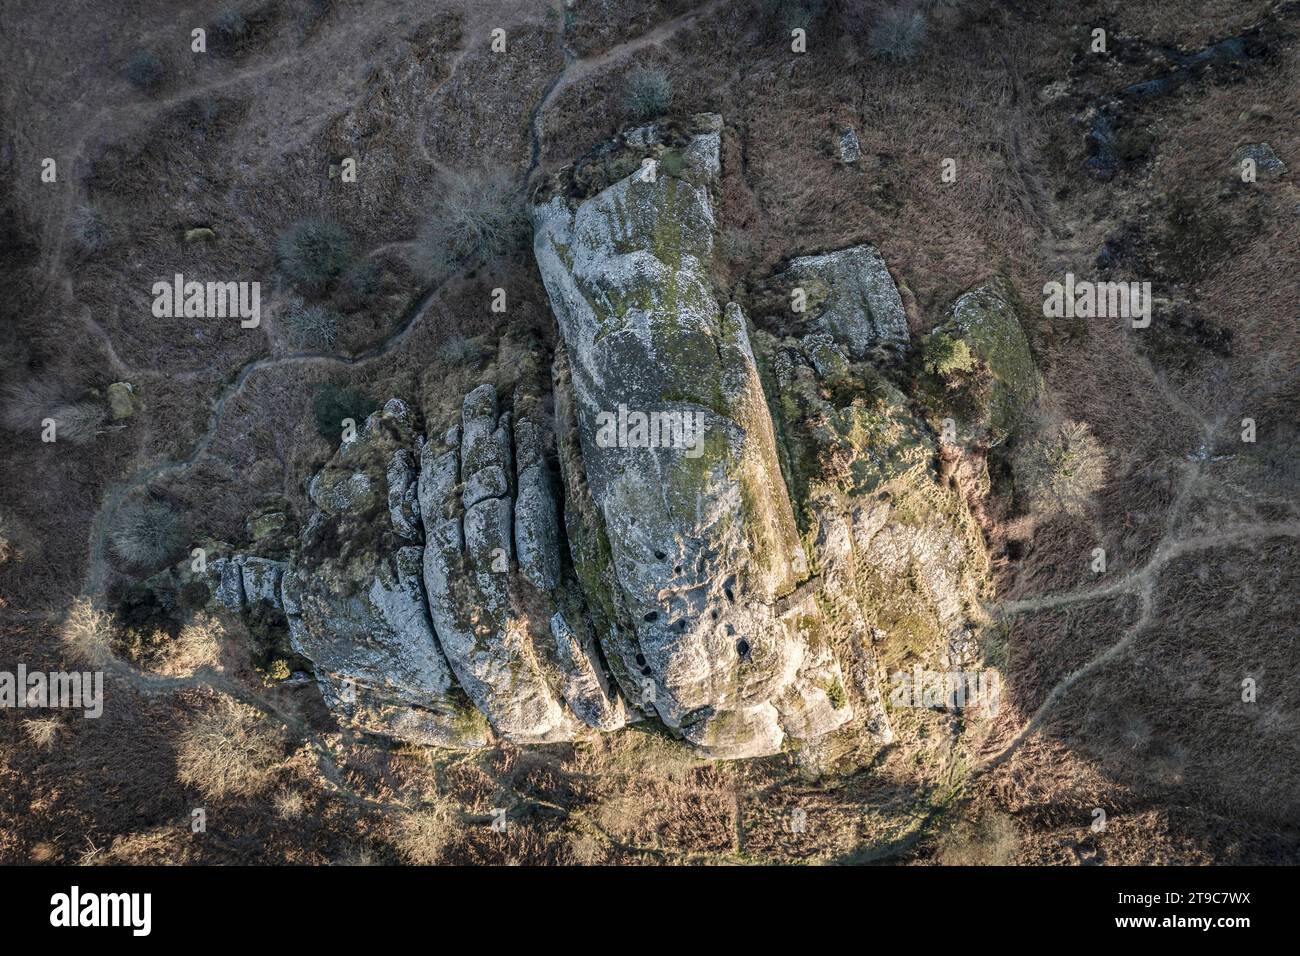 Vue aérienne de Blackingstone Rock dans le parc national de Dartmoor, Devon, Angleterre. Hiver (mars) 2021. Banque D'Images